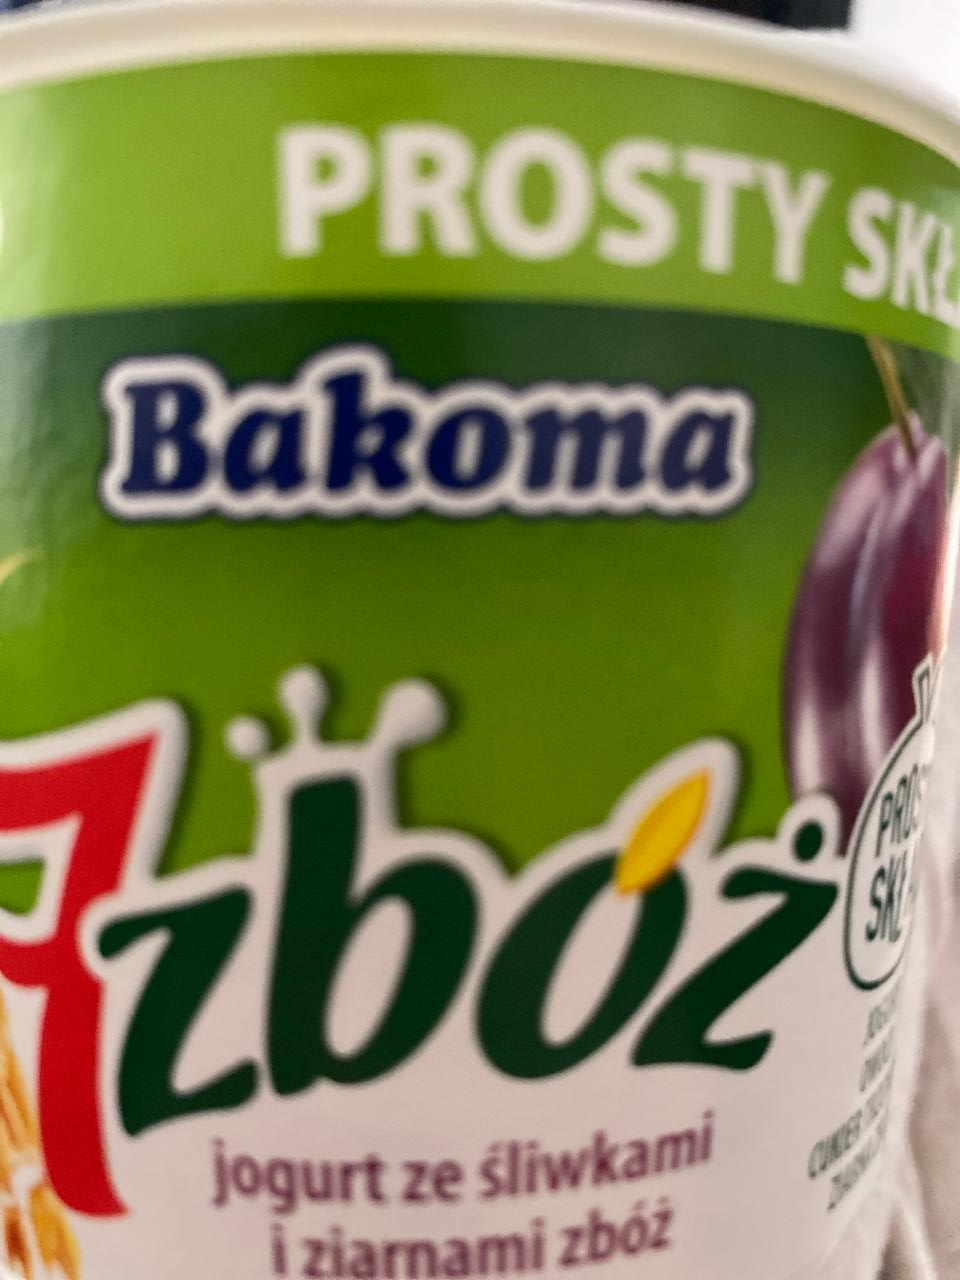 Fotografie - 7zboz Bakoma jogurt ze sliwkami